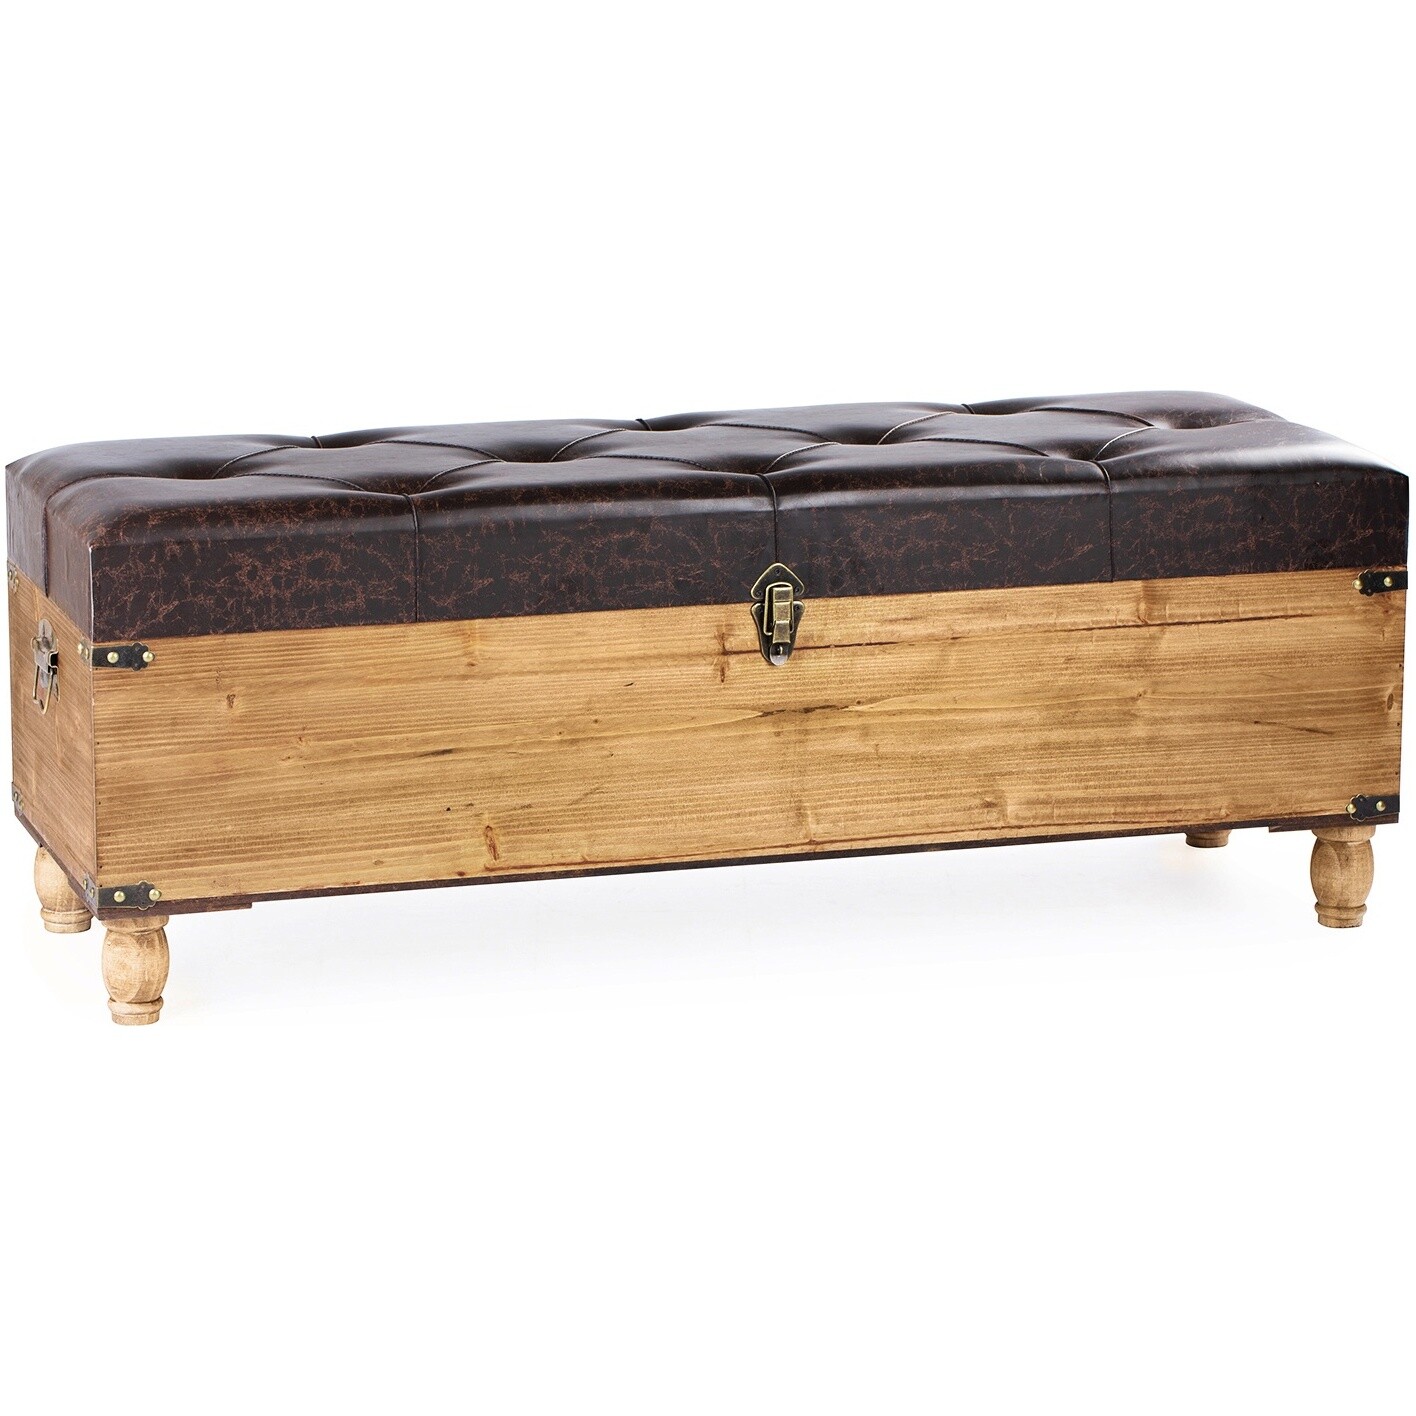 Сундук деревянный с мягким сиденьем 45х122 см коричневый 49-259B